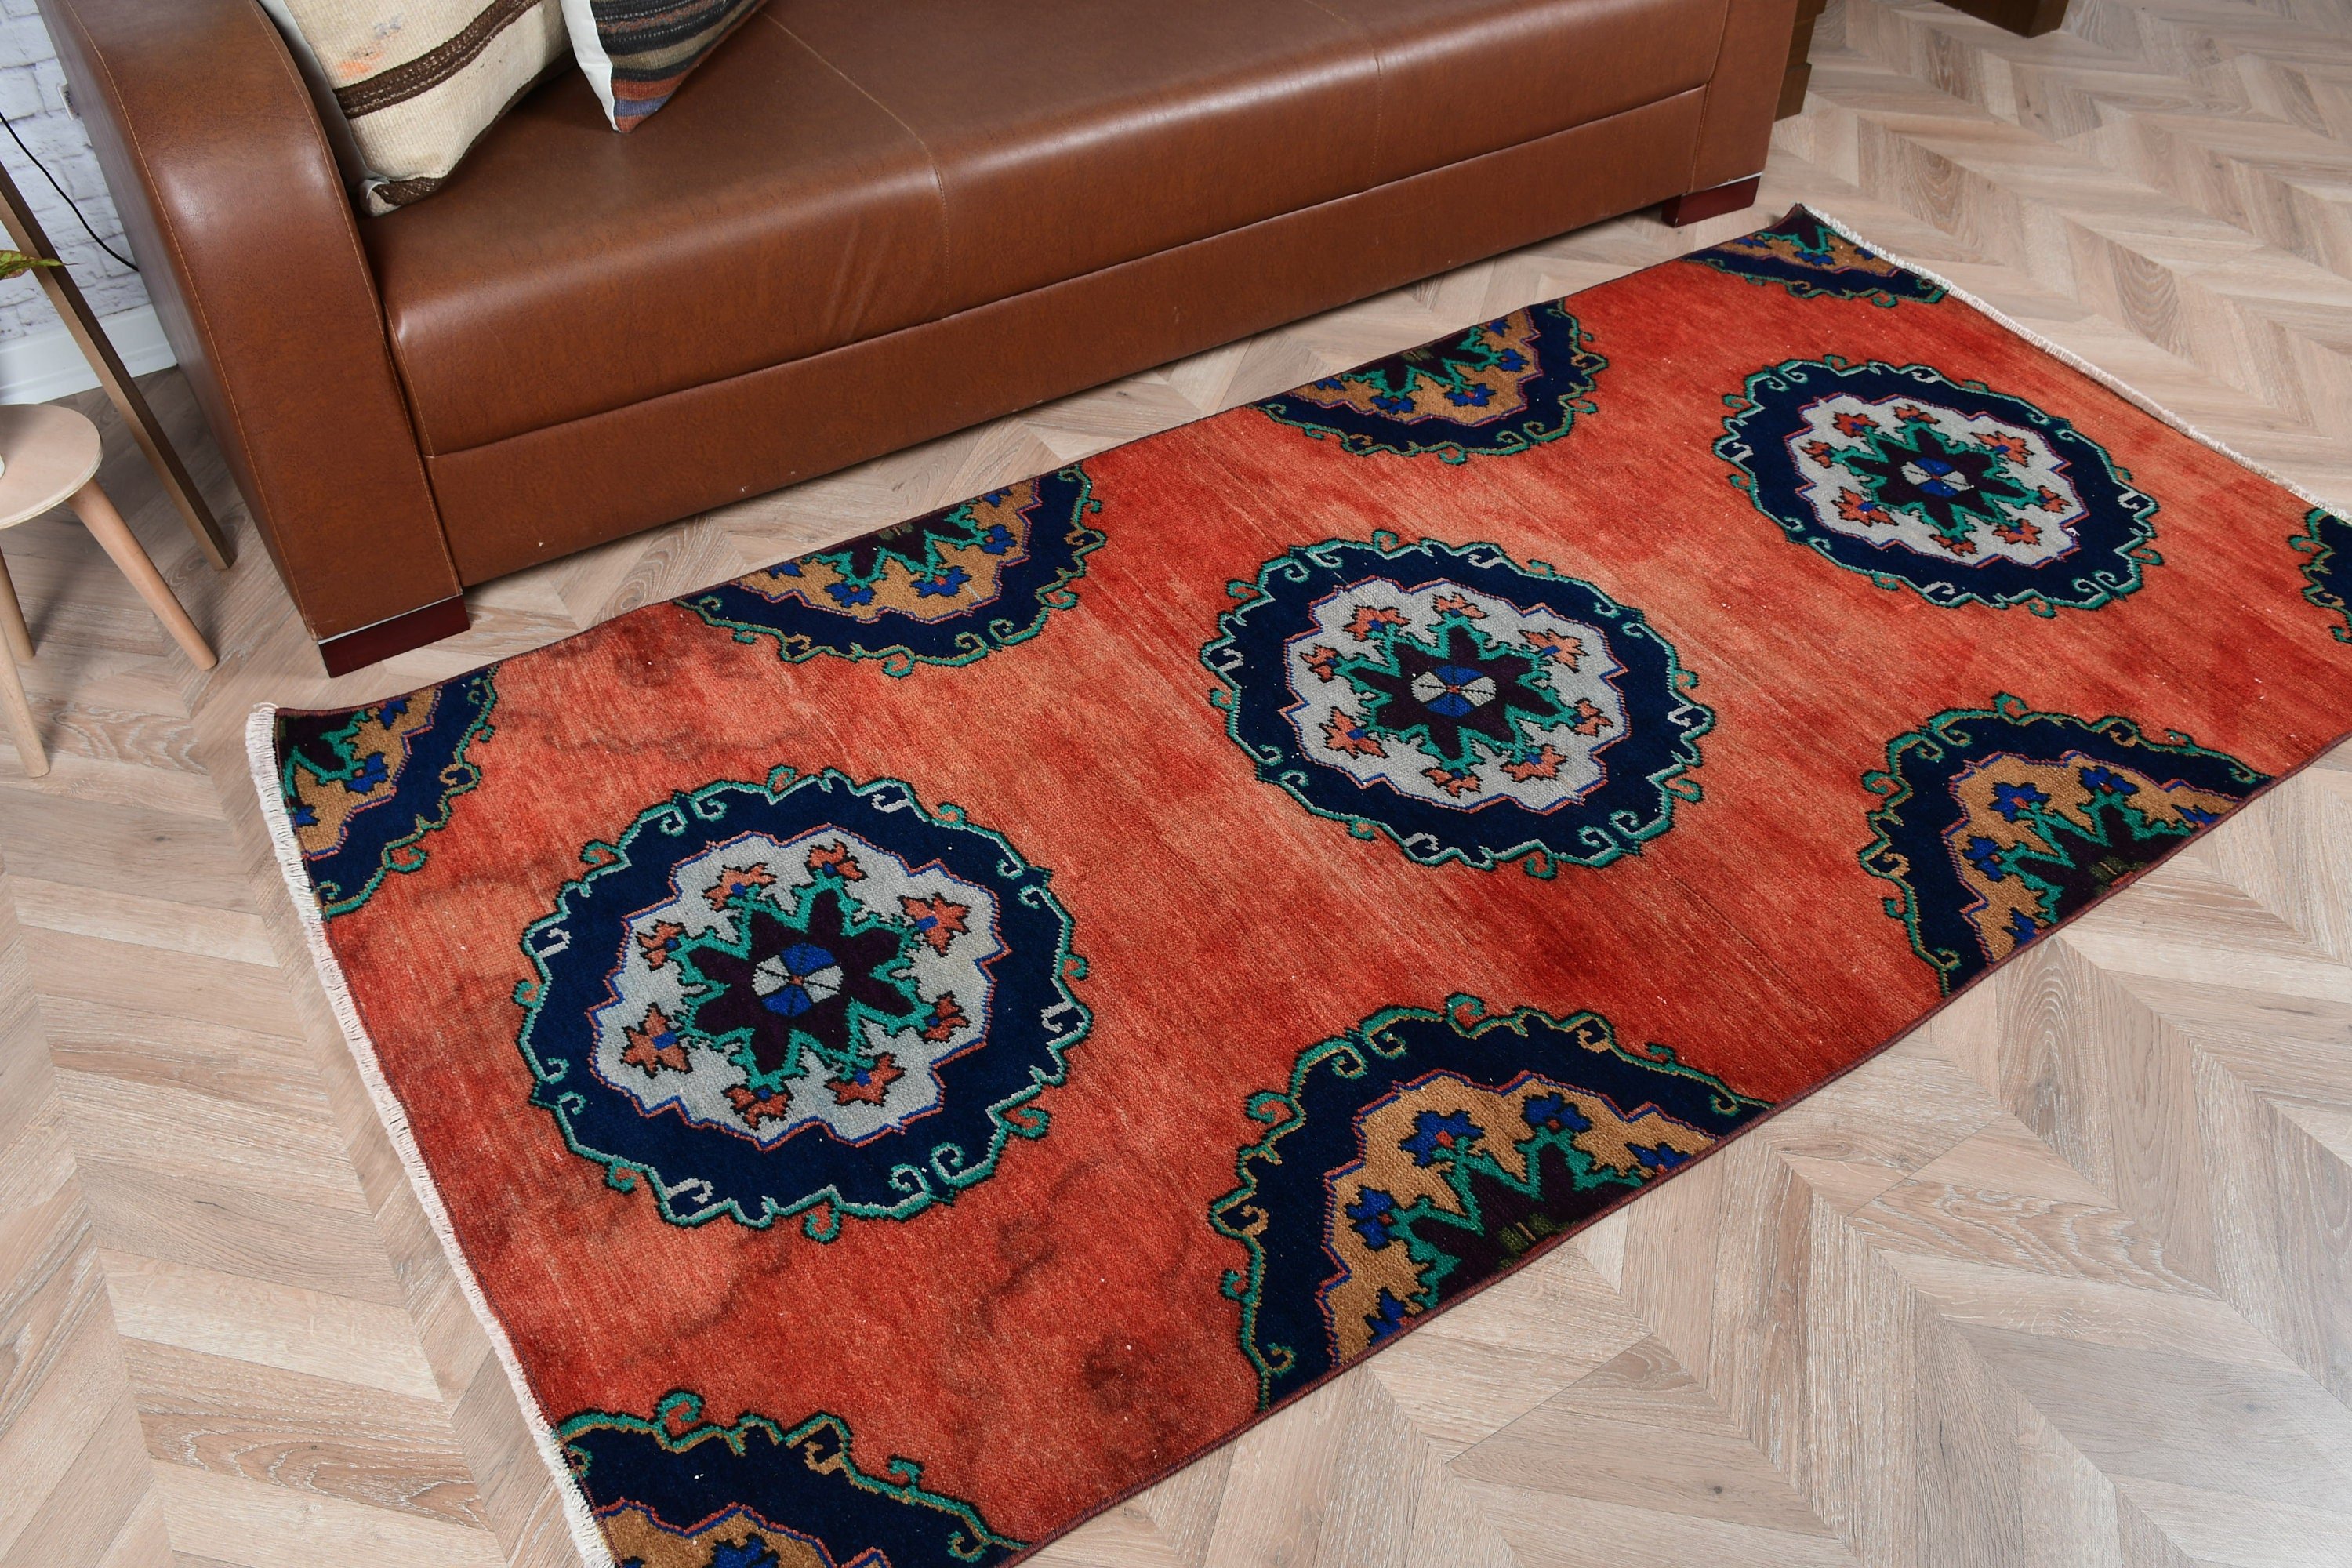 Turkish Rug, Oriental Rug, 3.6x6.9 ft Area Rugs, Office Rug, Floor Rugs, Vintage Rug, Red Anatolian Rugs, Bedroom Rugs, Living Room Rug